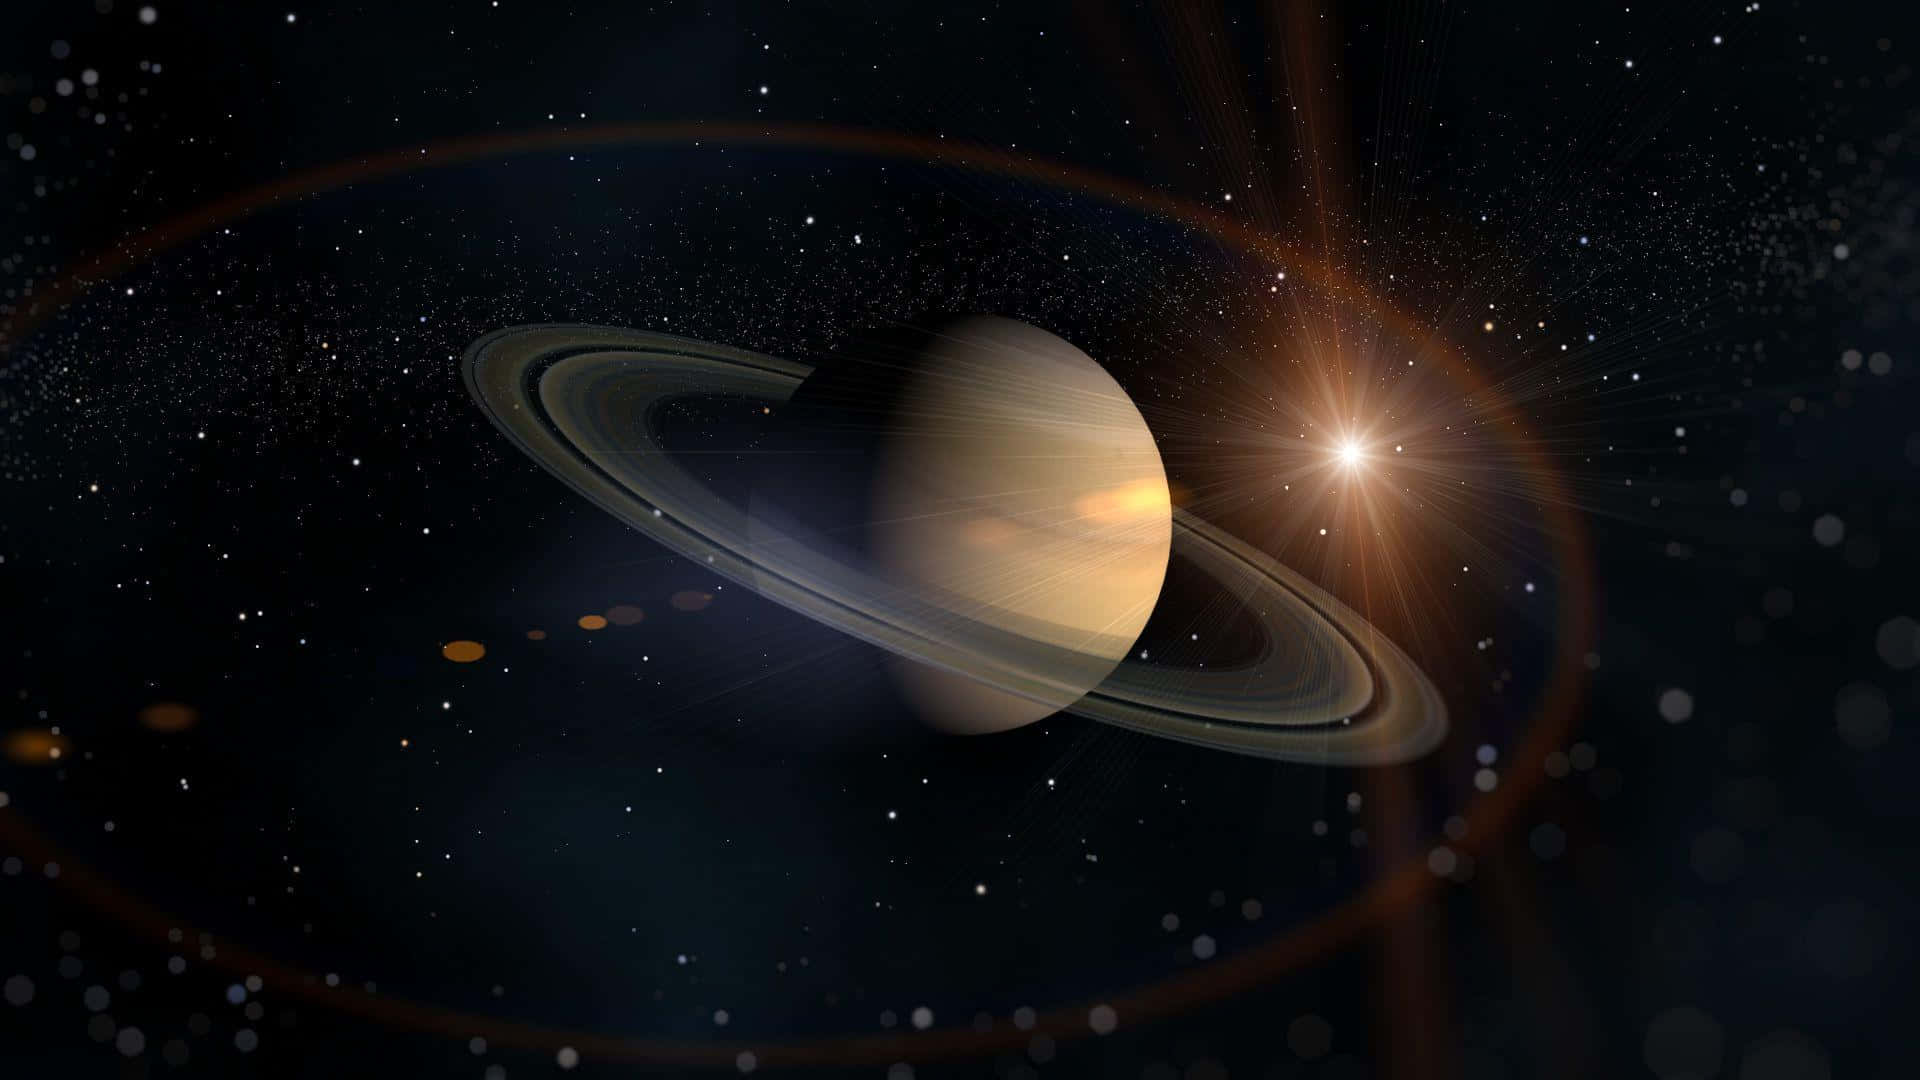 Impresionantevista De Saturno En El Espacio.